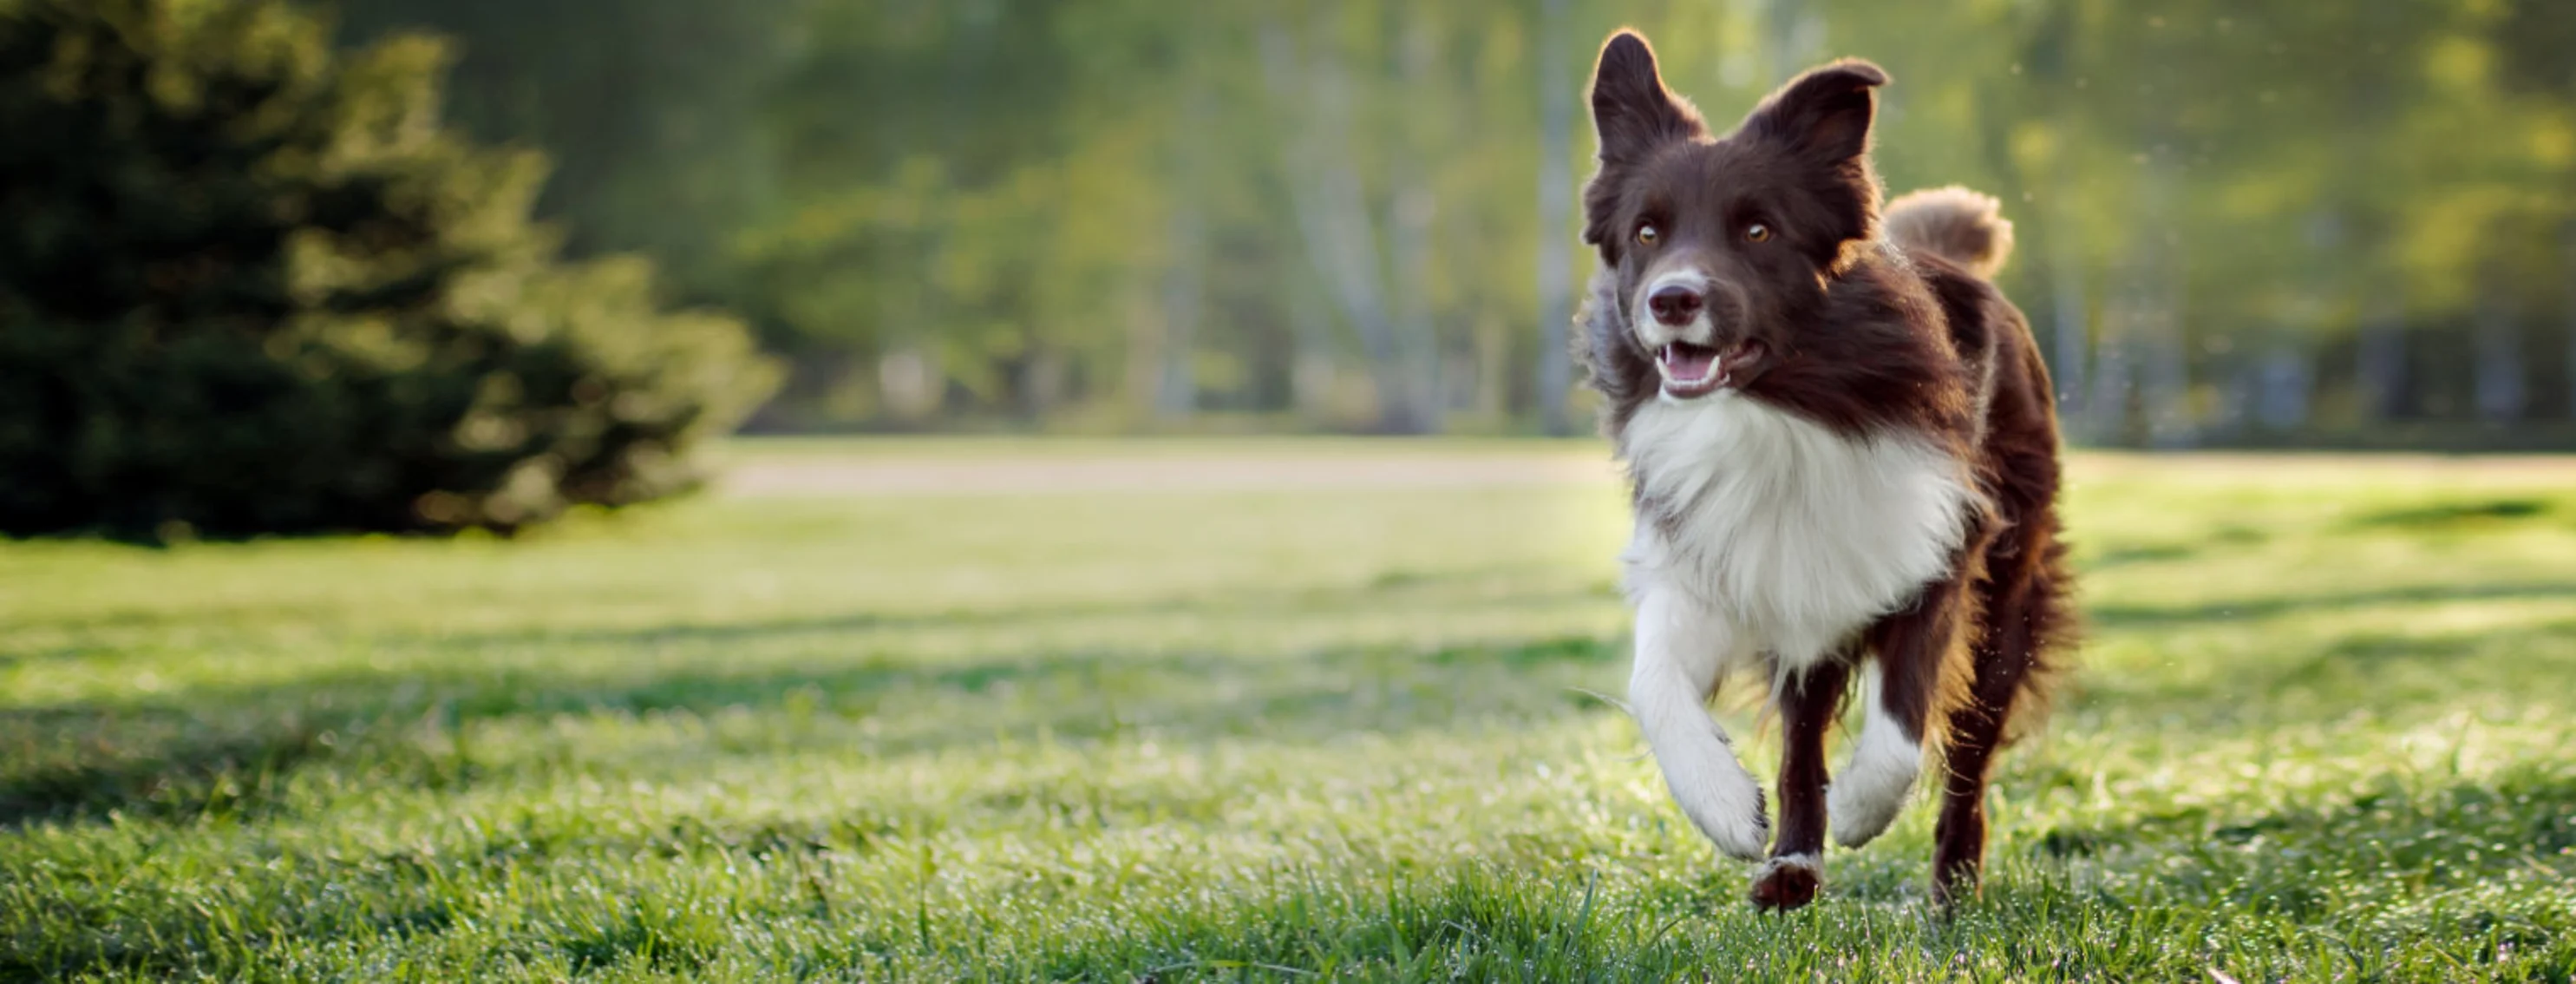 Border Collie (Dog) Running Through a Grassy Field